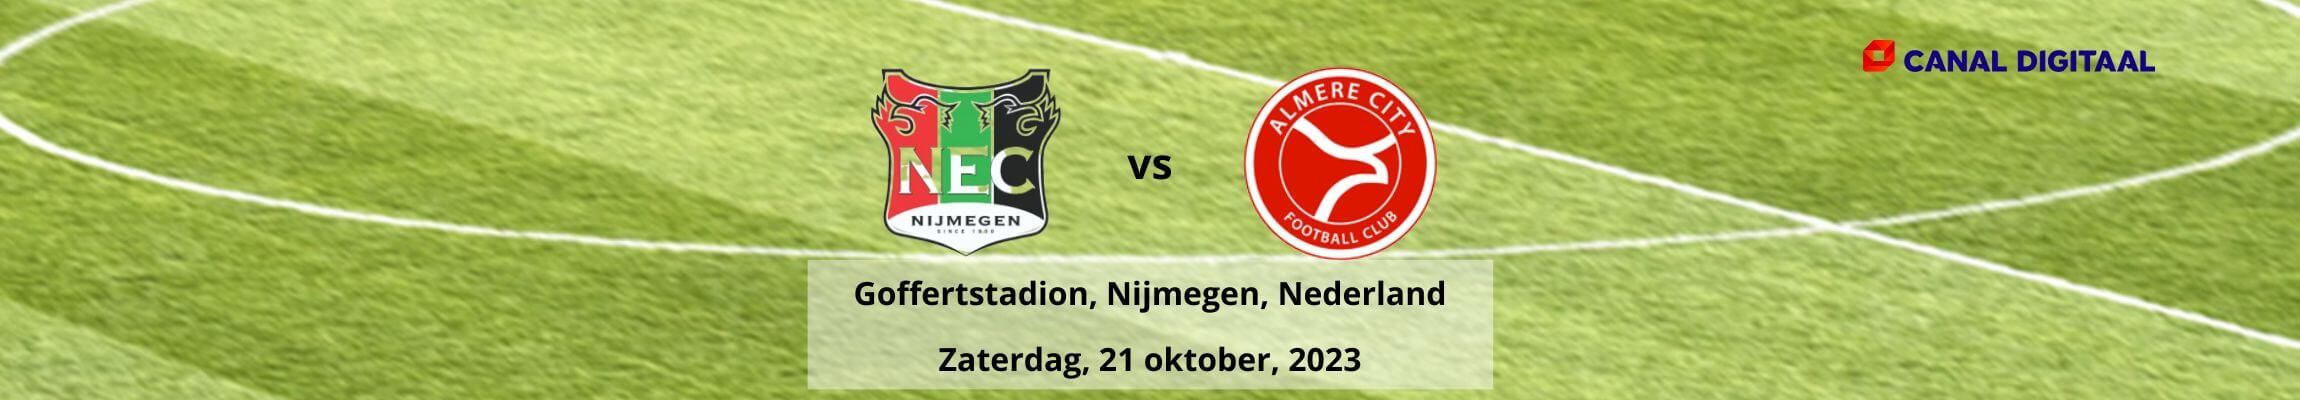 NEC vs Almere City